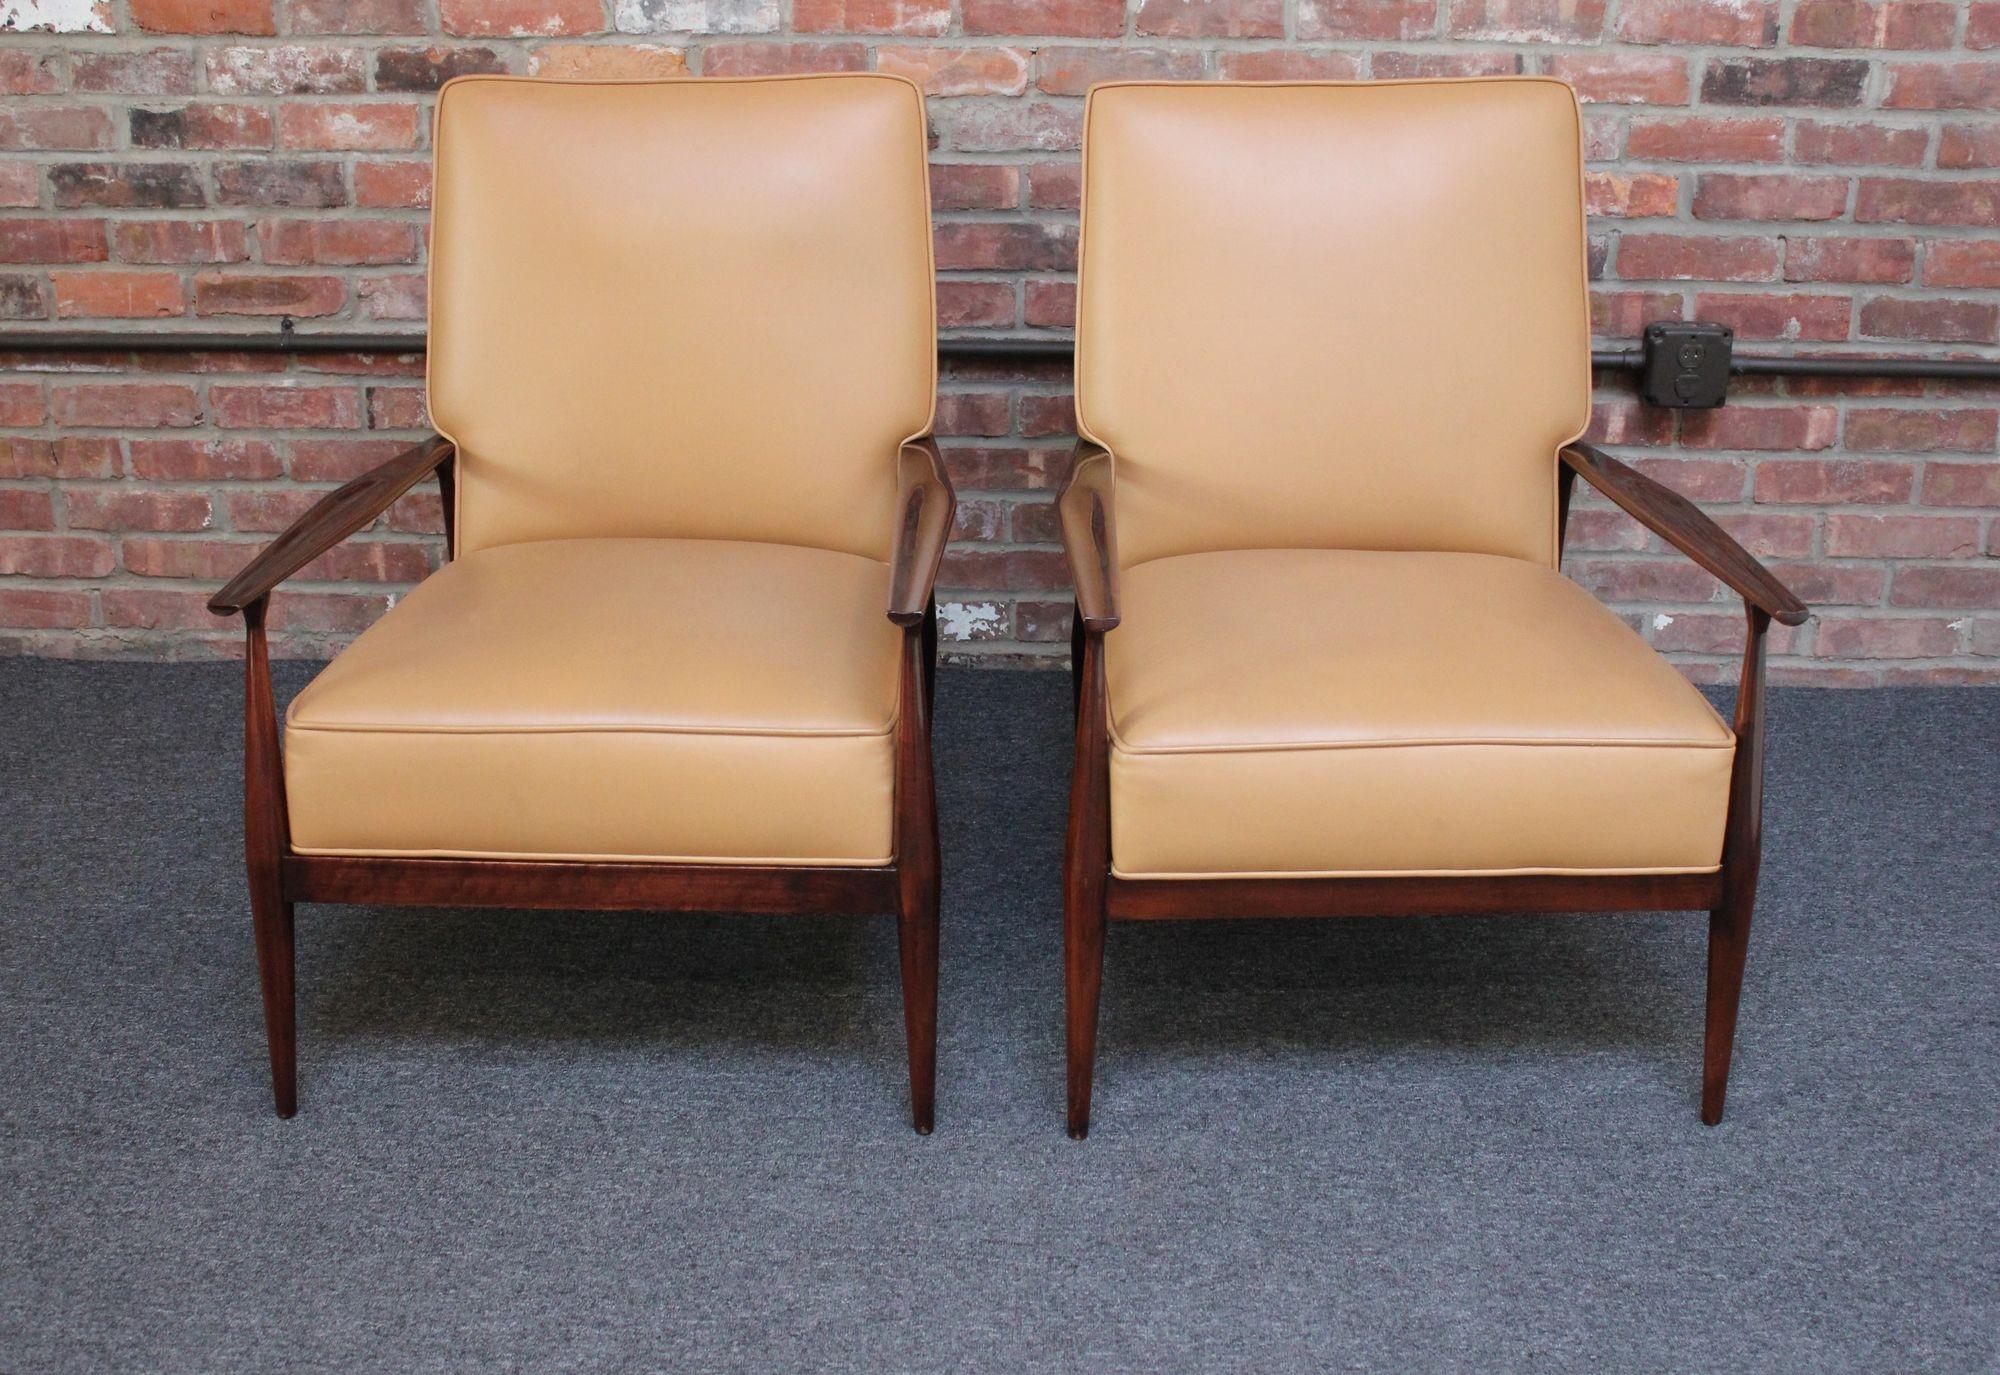 Paire convoitée de fauteuils du Paul Mccobb Planner Group réalisés entre 1955 et 1956 (Winchendon, MA, USA).
La structure sculpturale de l'assise et du dossier est profilée pour mettre en valeur les accoudoirs fins et sculptés.
Un bel ensemble aux